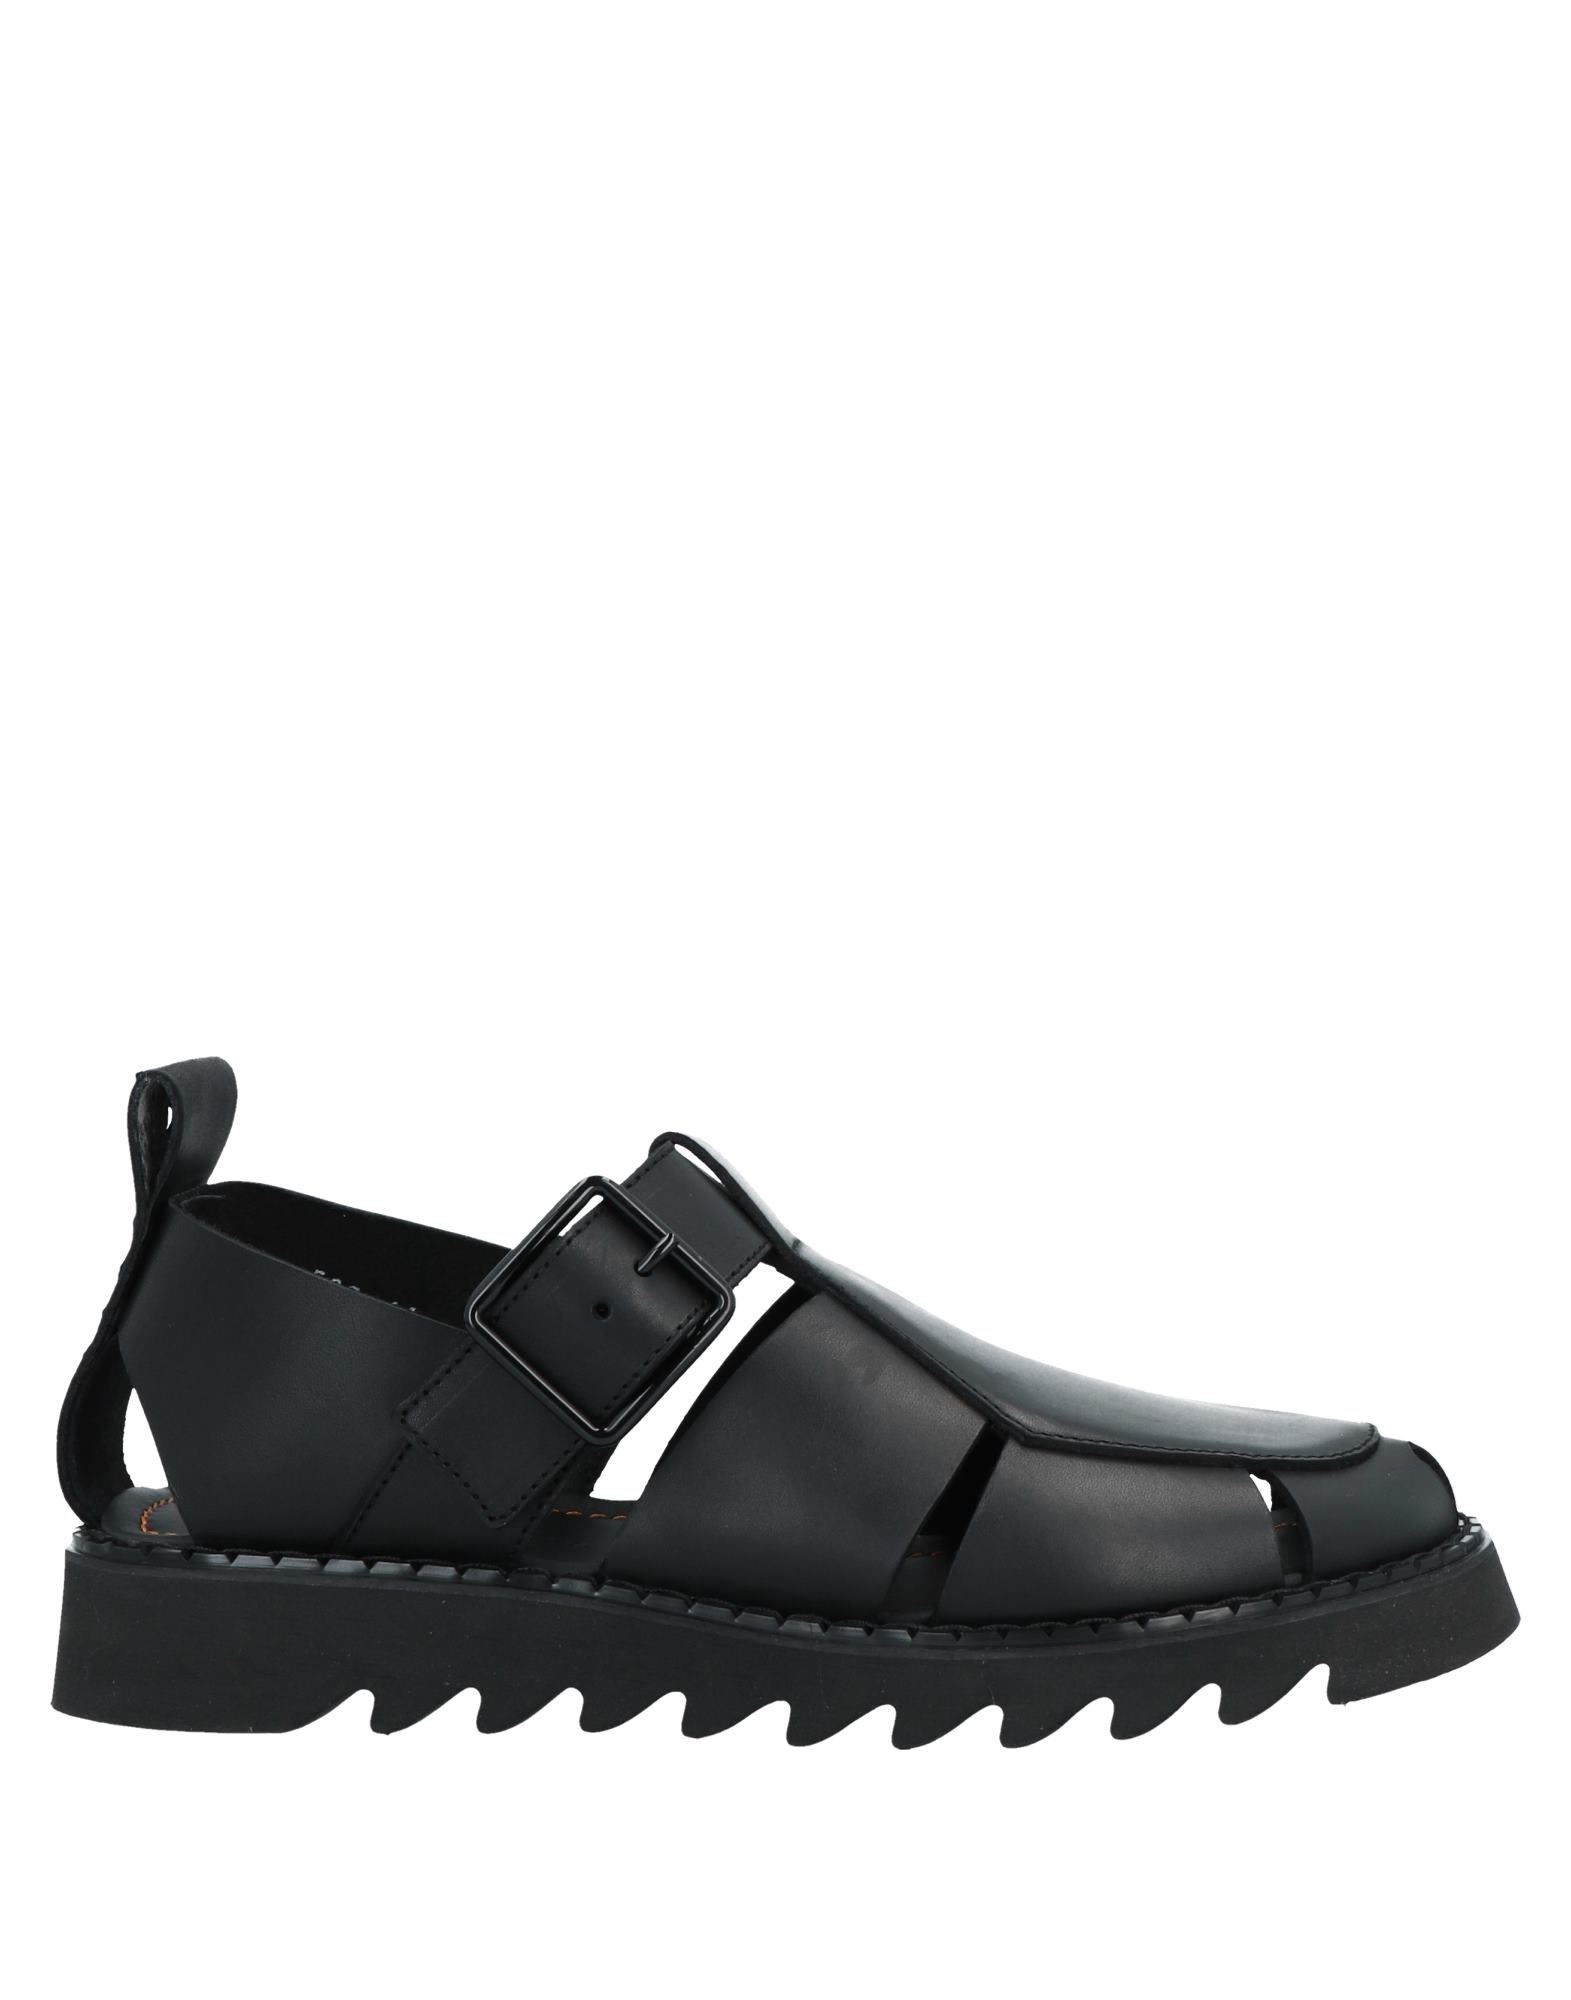 Attimonelli's Sandals In Black